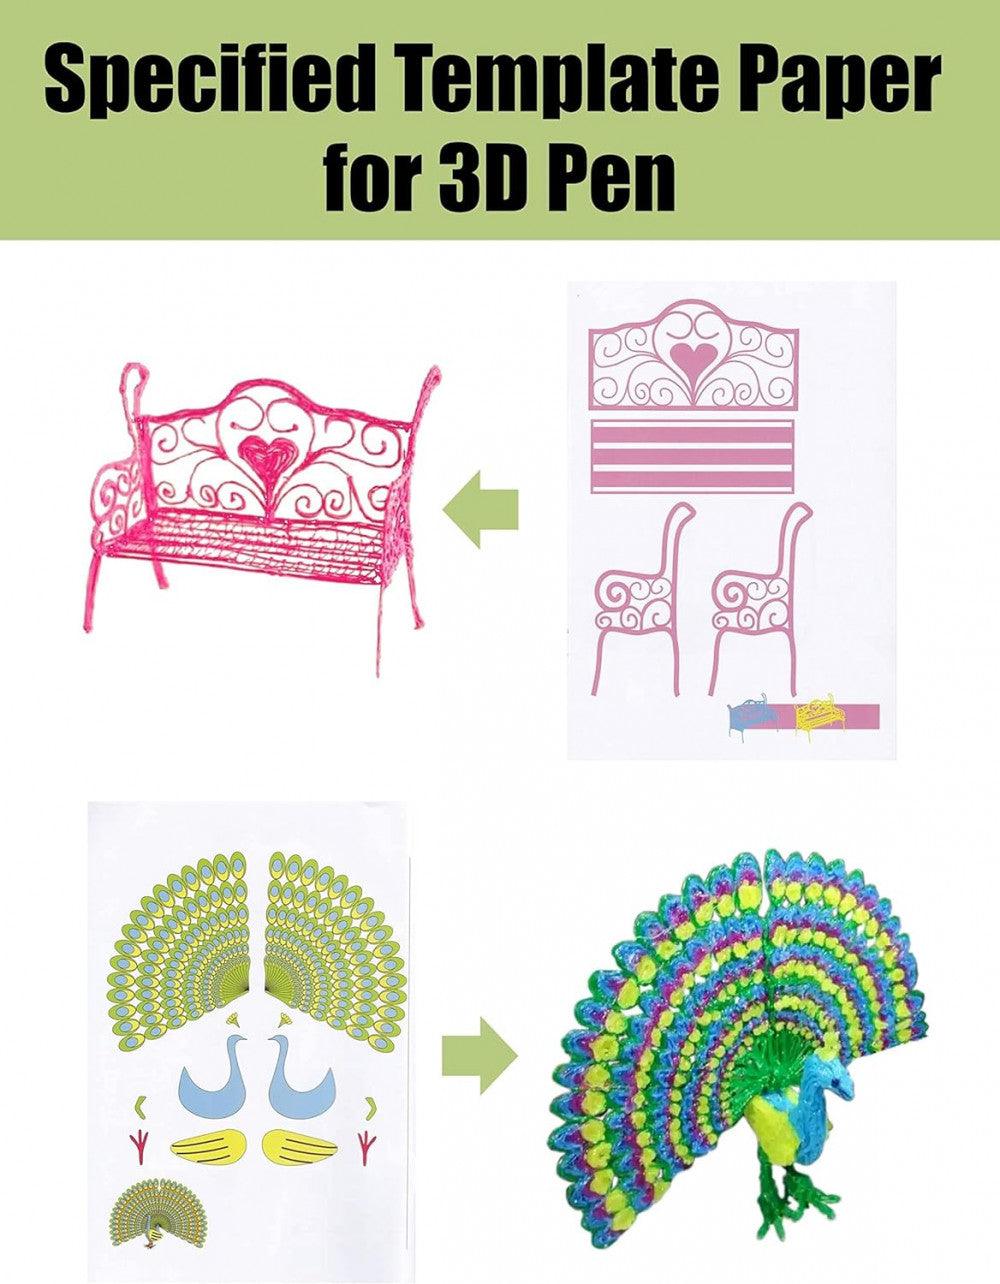 SONGTIY 3D Nyomtatási Rajzoló Könyv, Újrahasználható Színes 40 Mintás Sablon Gyerekeknek